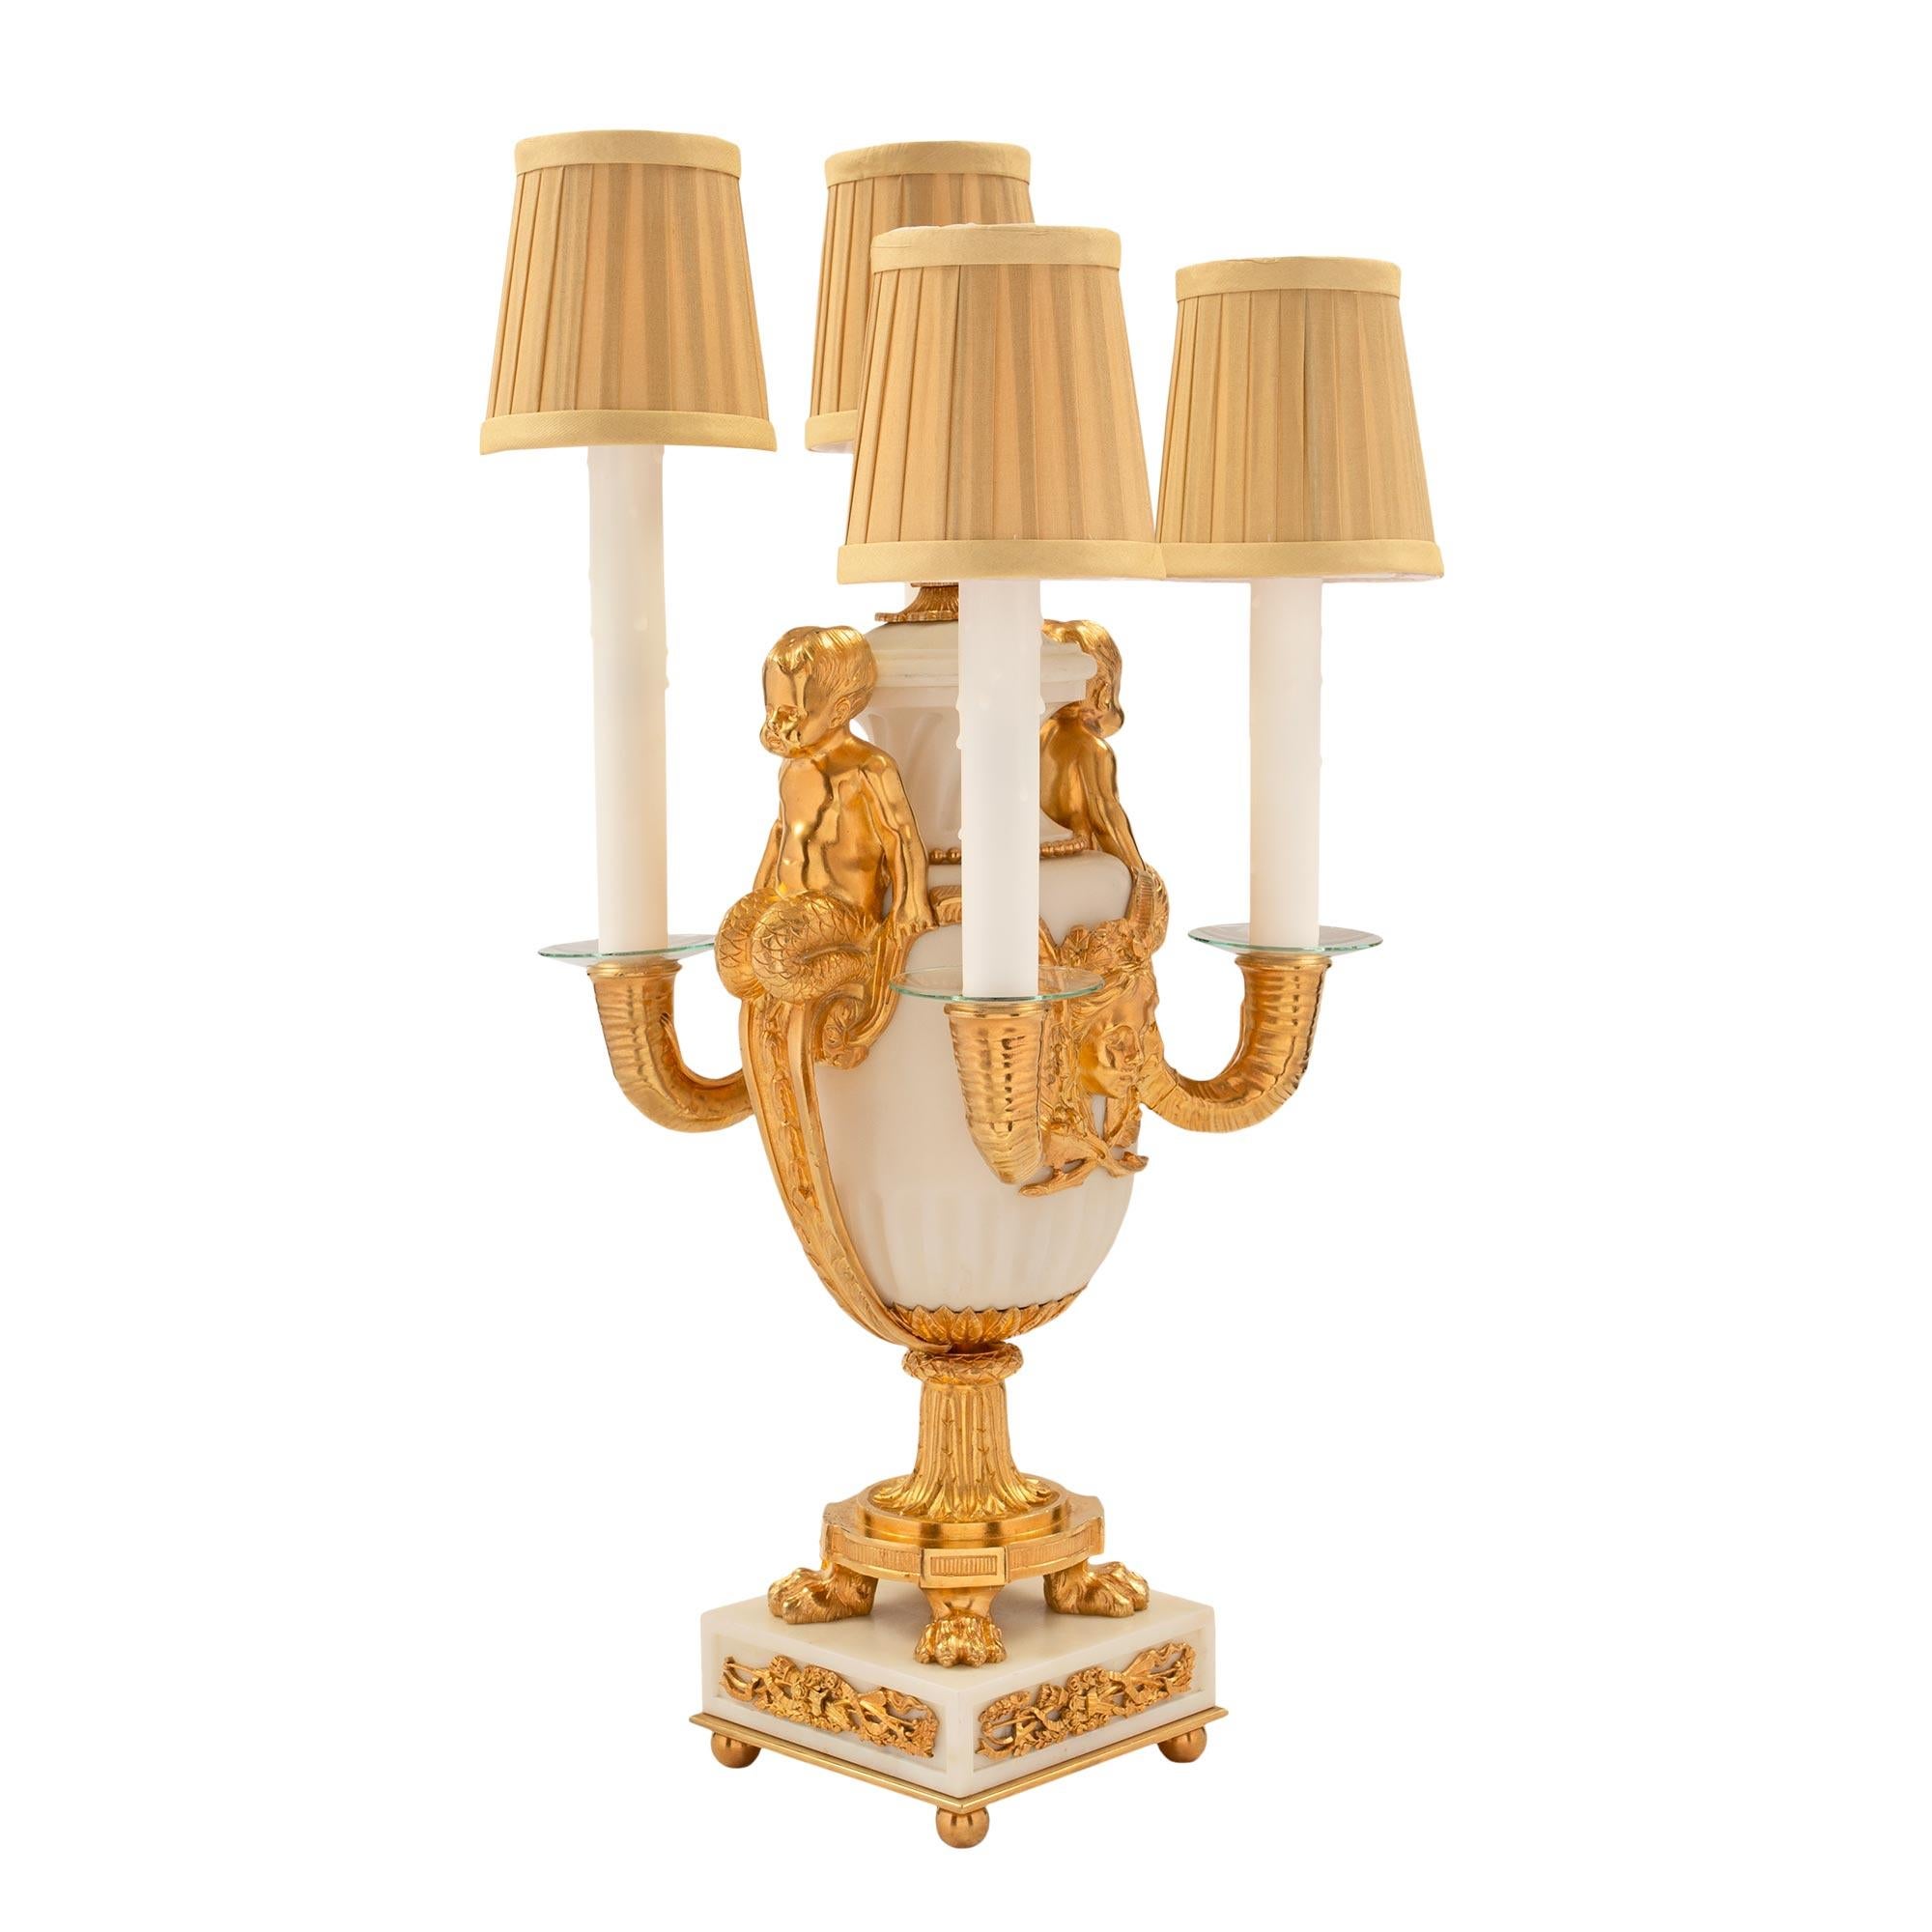 Paire de lampes candélabres électrifiées à quatre bras en marbre de Carrare blanc et bronze doré, probablement d'Henry Dasson, d'époque Louis XVI et Belle Époque. Chaque lampe est surélevée par une base carrée en marbre de Carrare blanc avec des